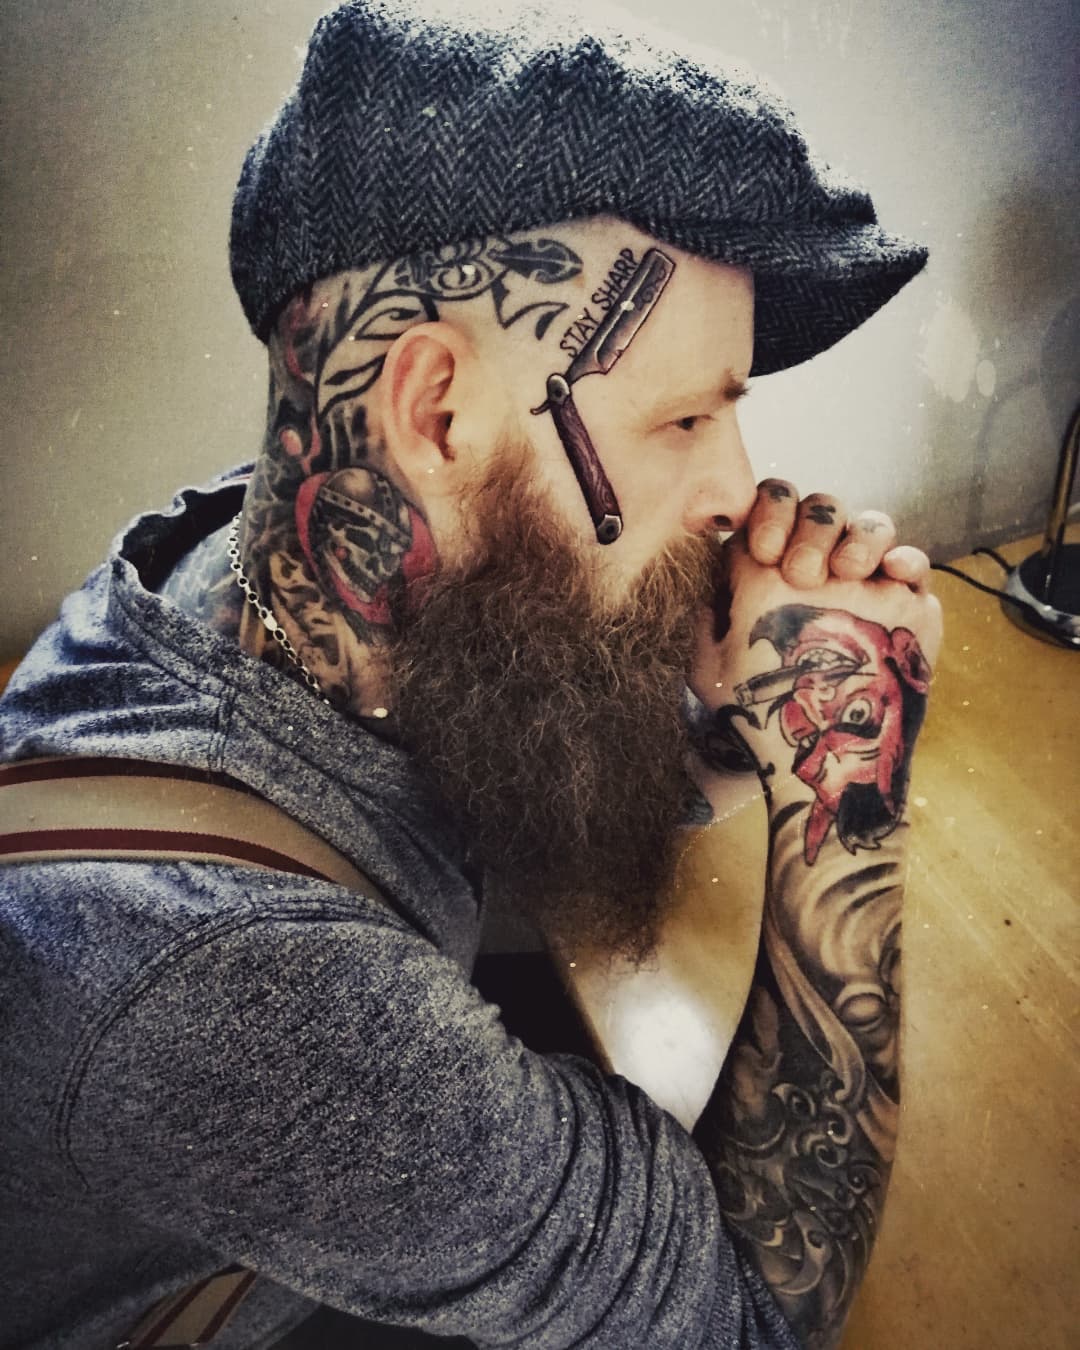 Razor head tattoo